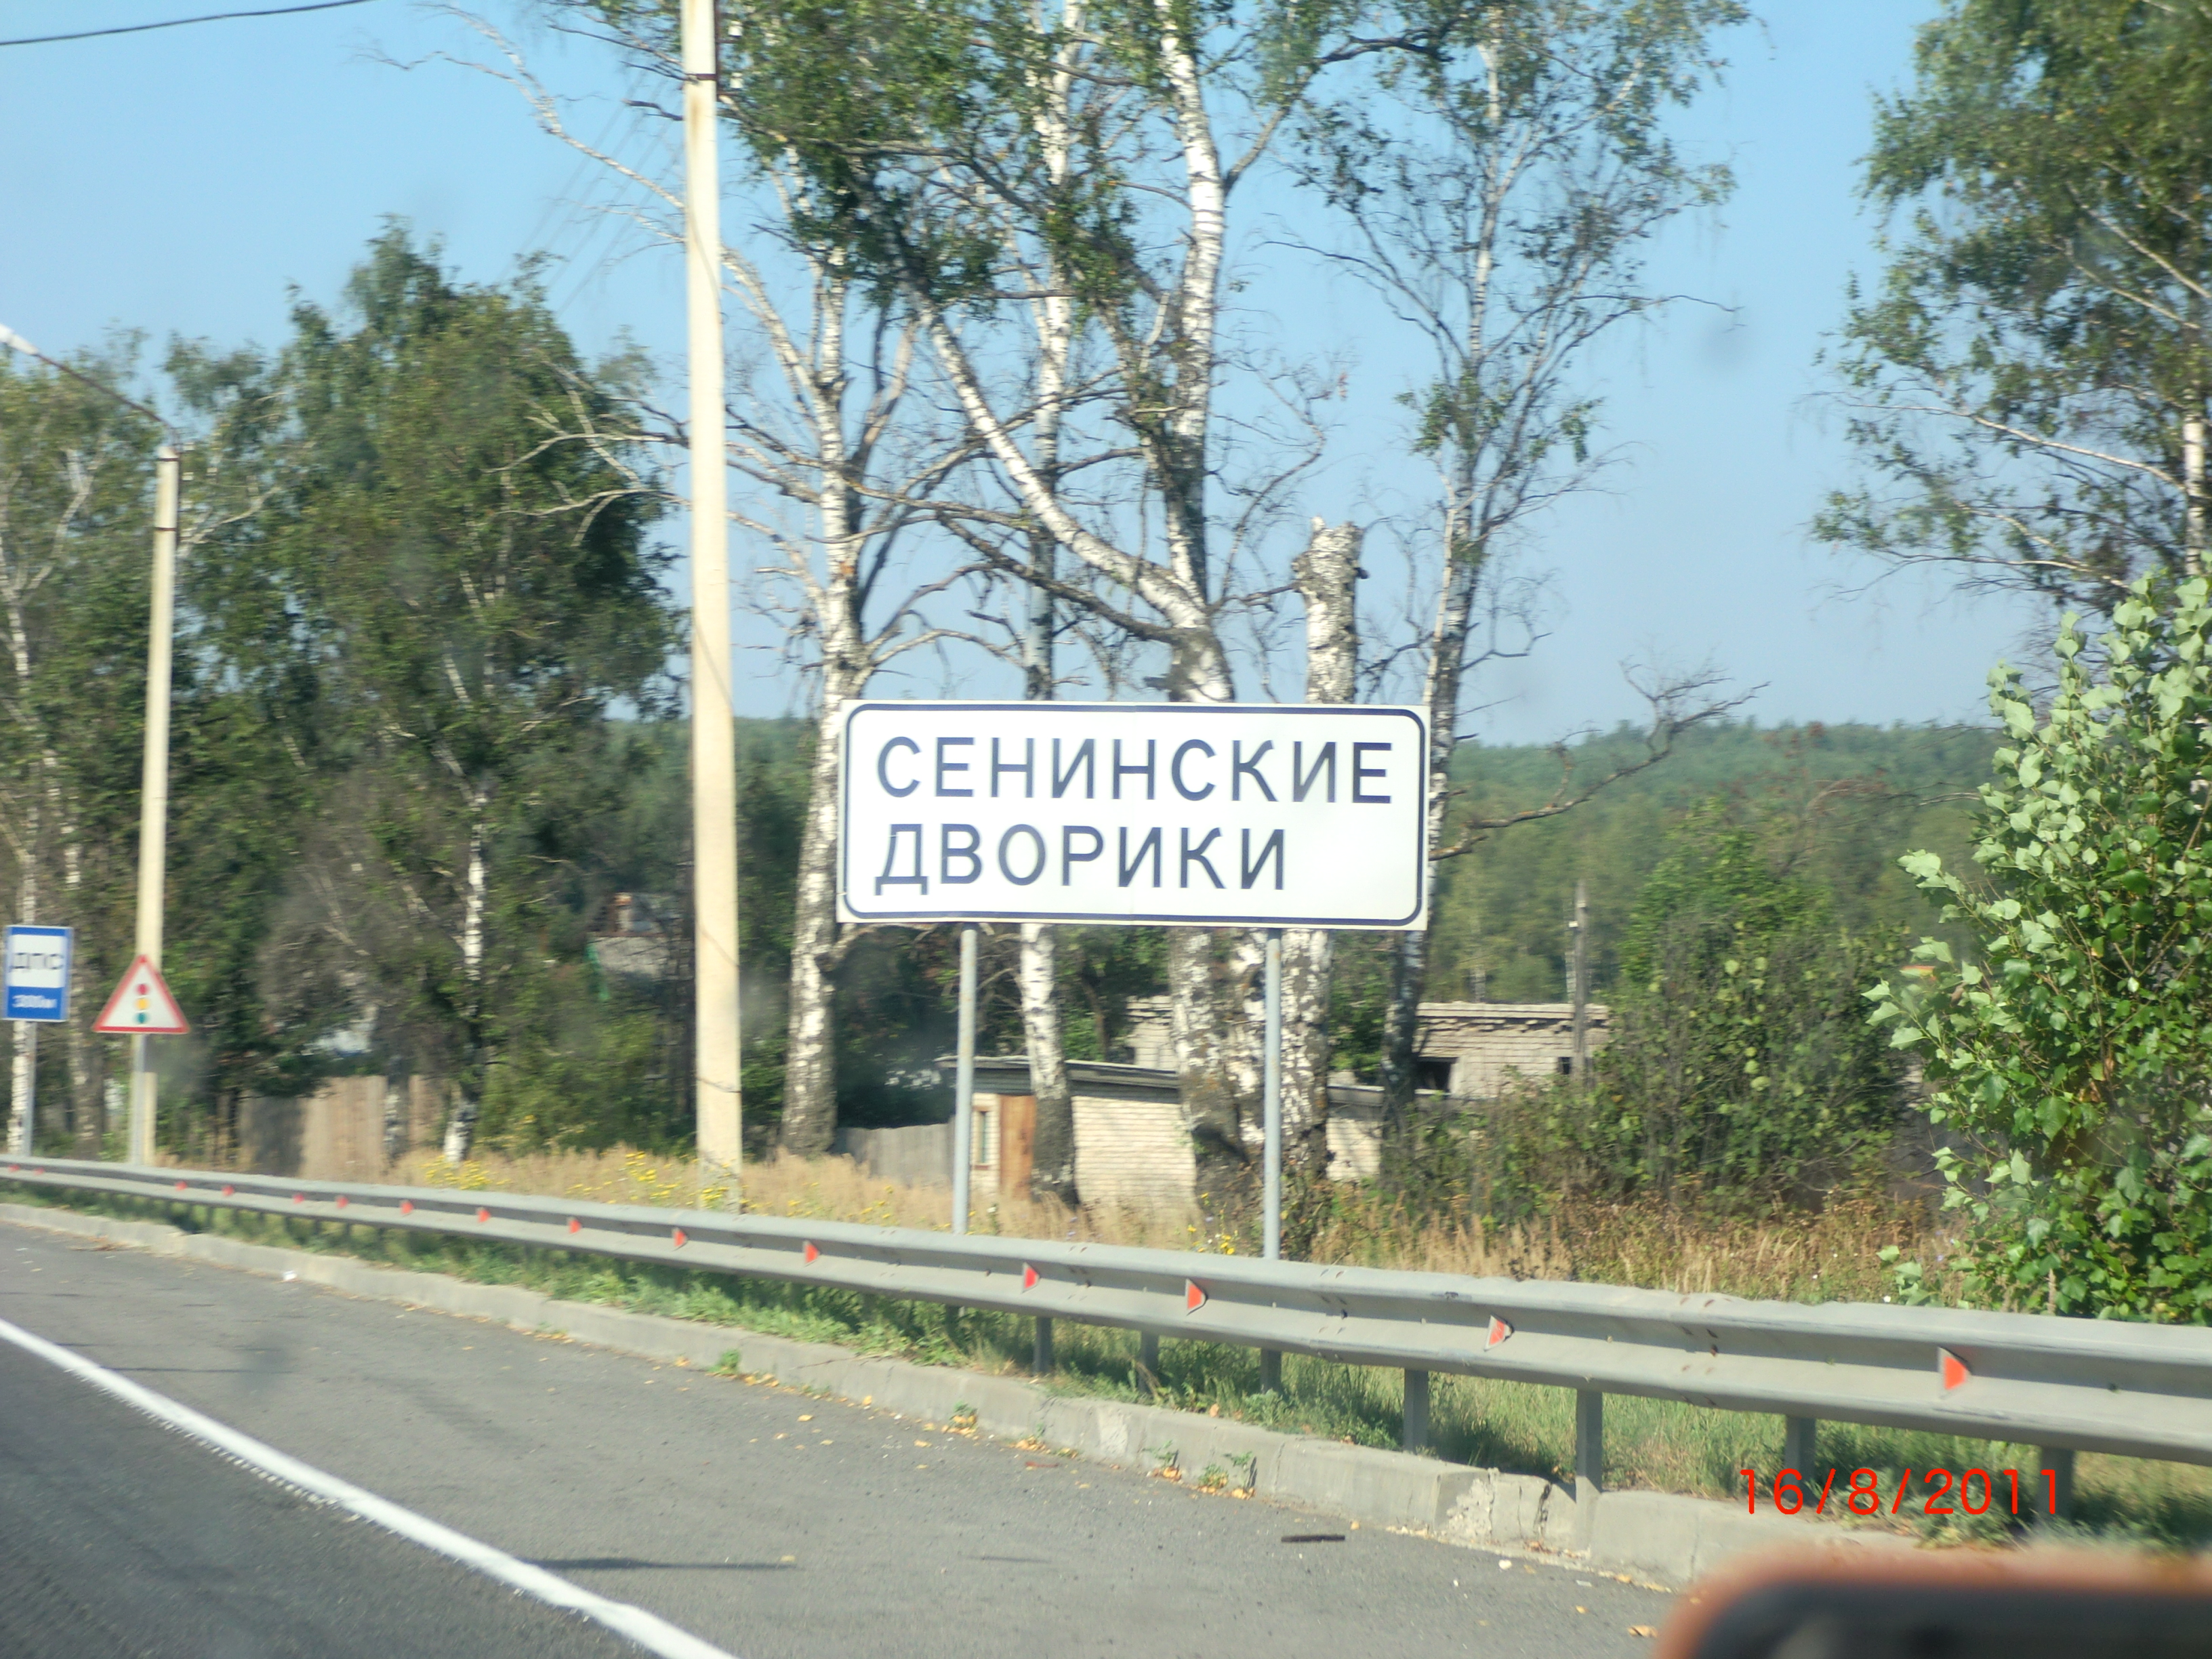 Расписание рейсов по маршруту Нижний Новгород - Сенинские Дворики